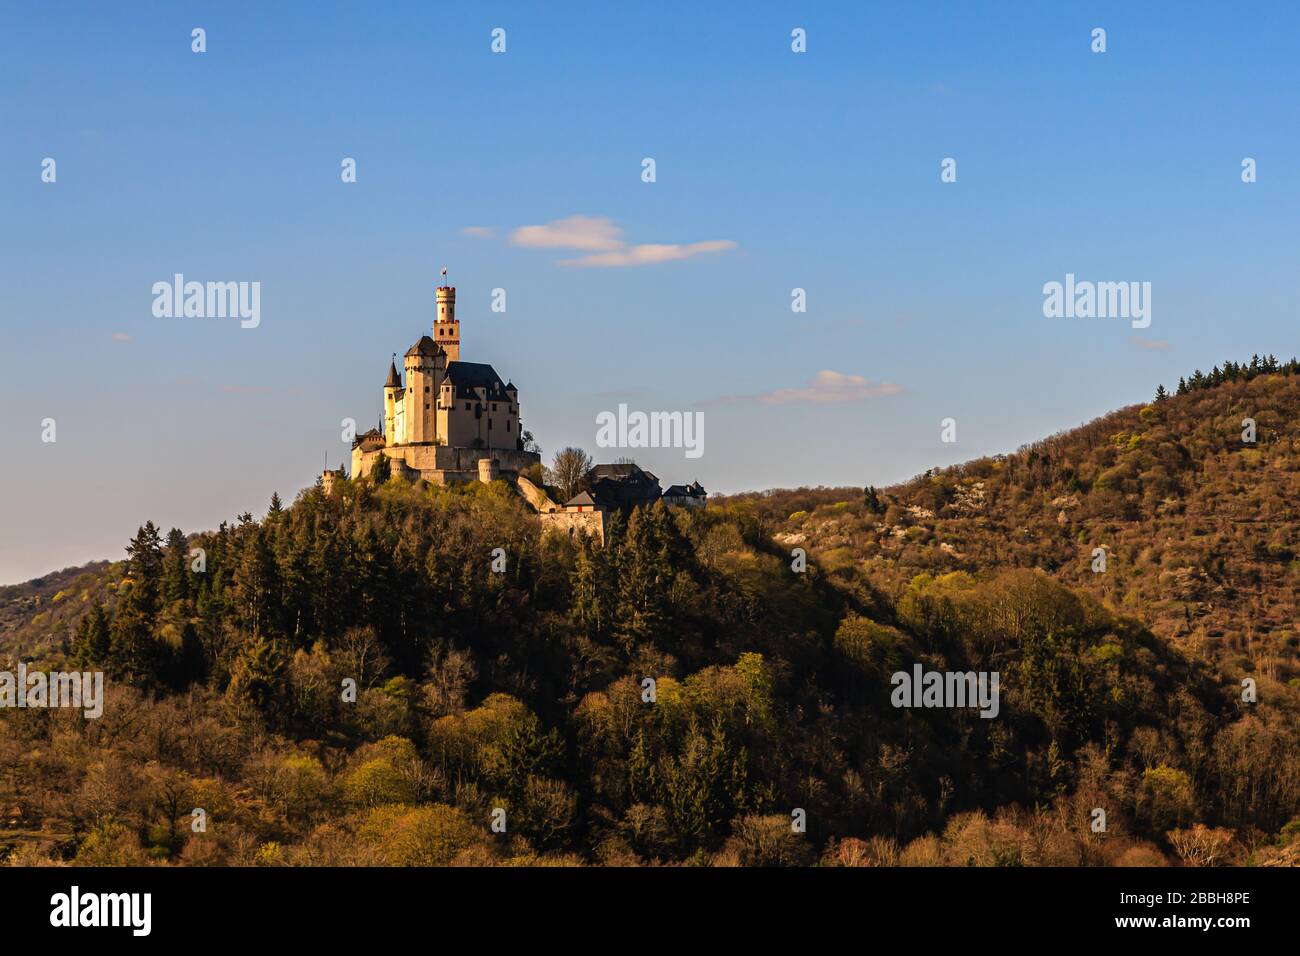 Château de Marksburg au crépuscule au printemps, braubach, rhin, allemagne, patrimoine culturel mondial Banque D'Images